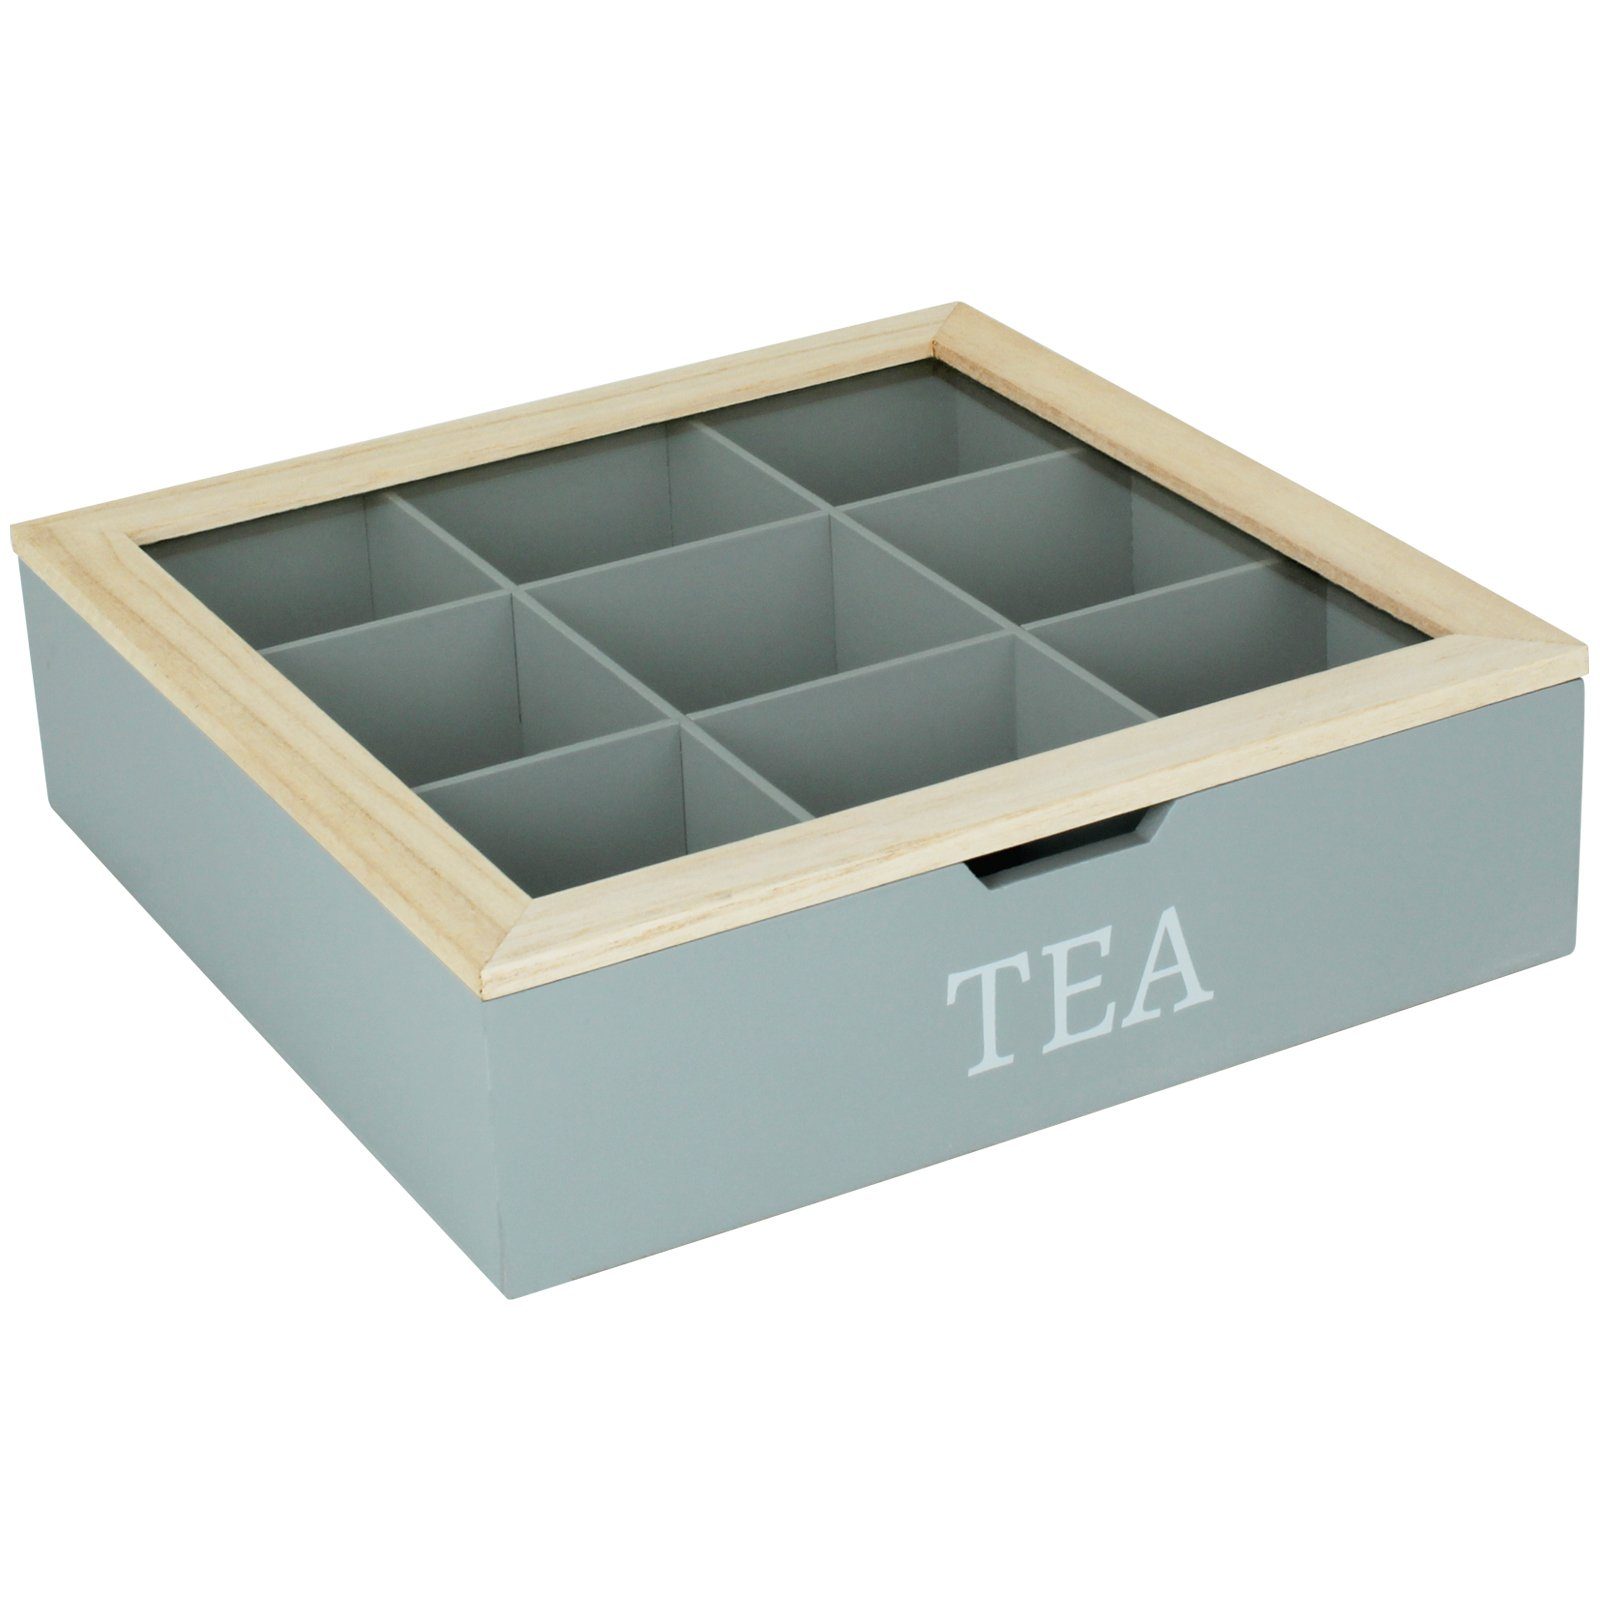 Koopman 9 Kiste Teekiste Teebeutelbox, Dose Teesorten Teebeutel Box Teekasten Fächer Farbwahl Grau Teebox TEA Tee-Beutel Holz Tee Eingriff Holzteebox